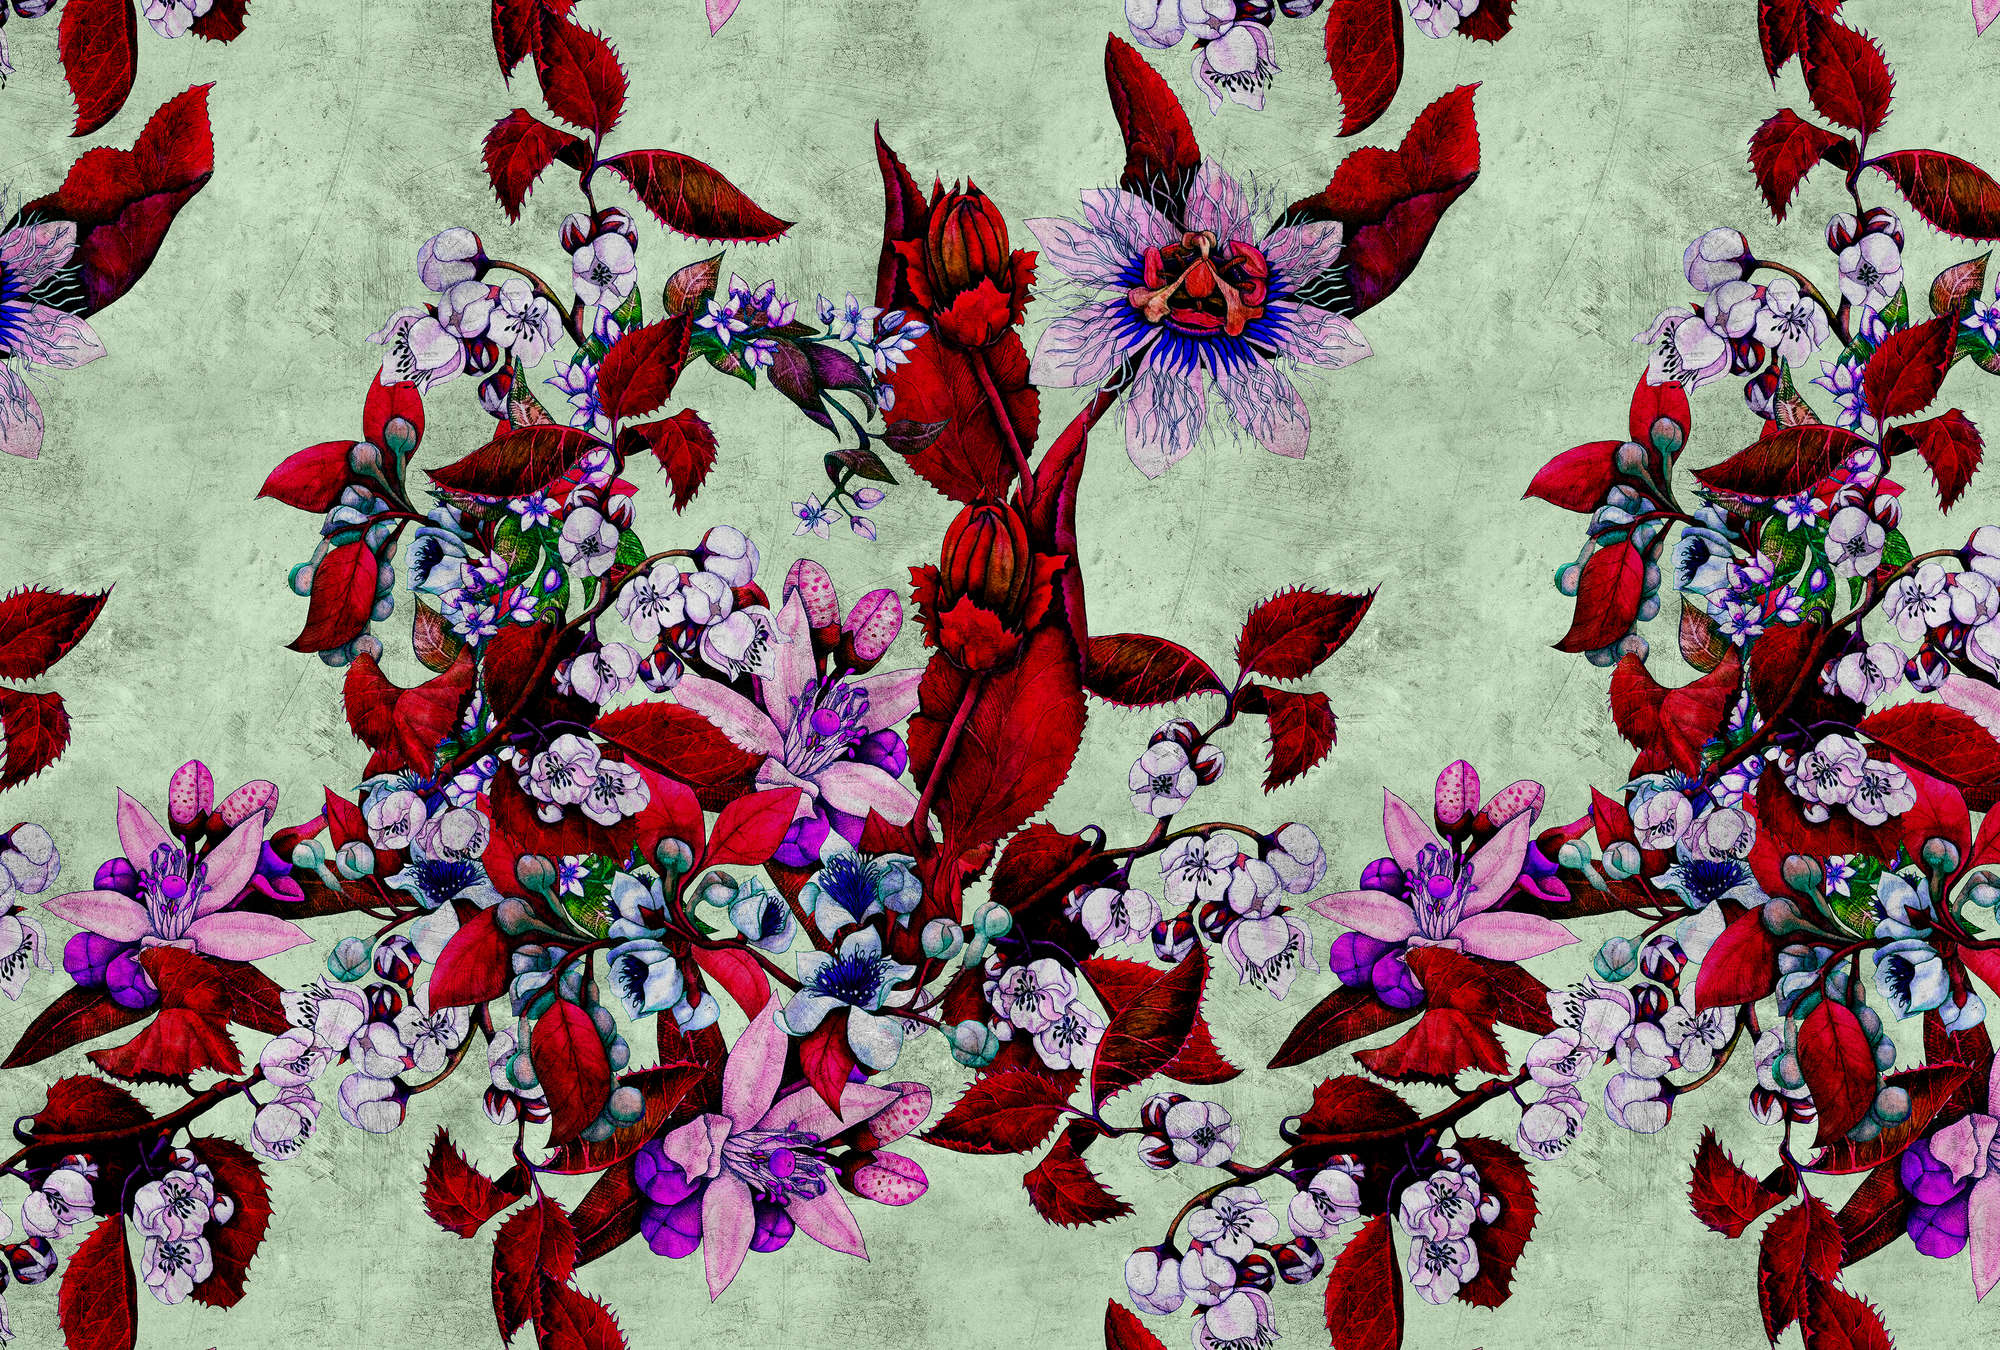             Tropical Passion 3 - Fotomurali con un giocoso disegno floreale - Texture a graffi - Verde, rosso | Materiali non tessuto liscio opaco
        